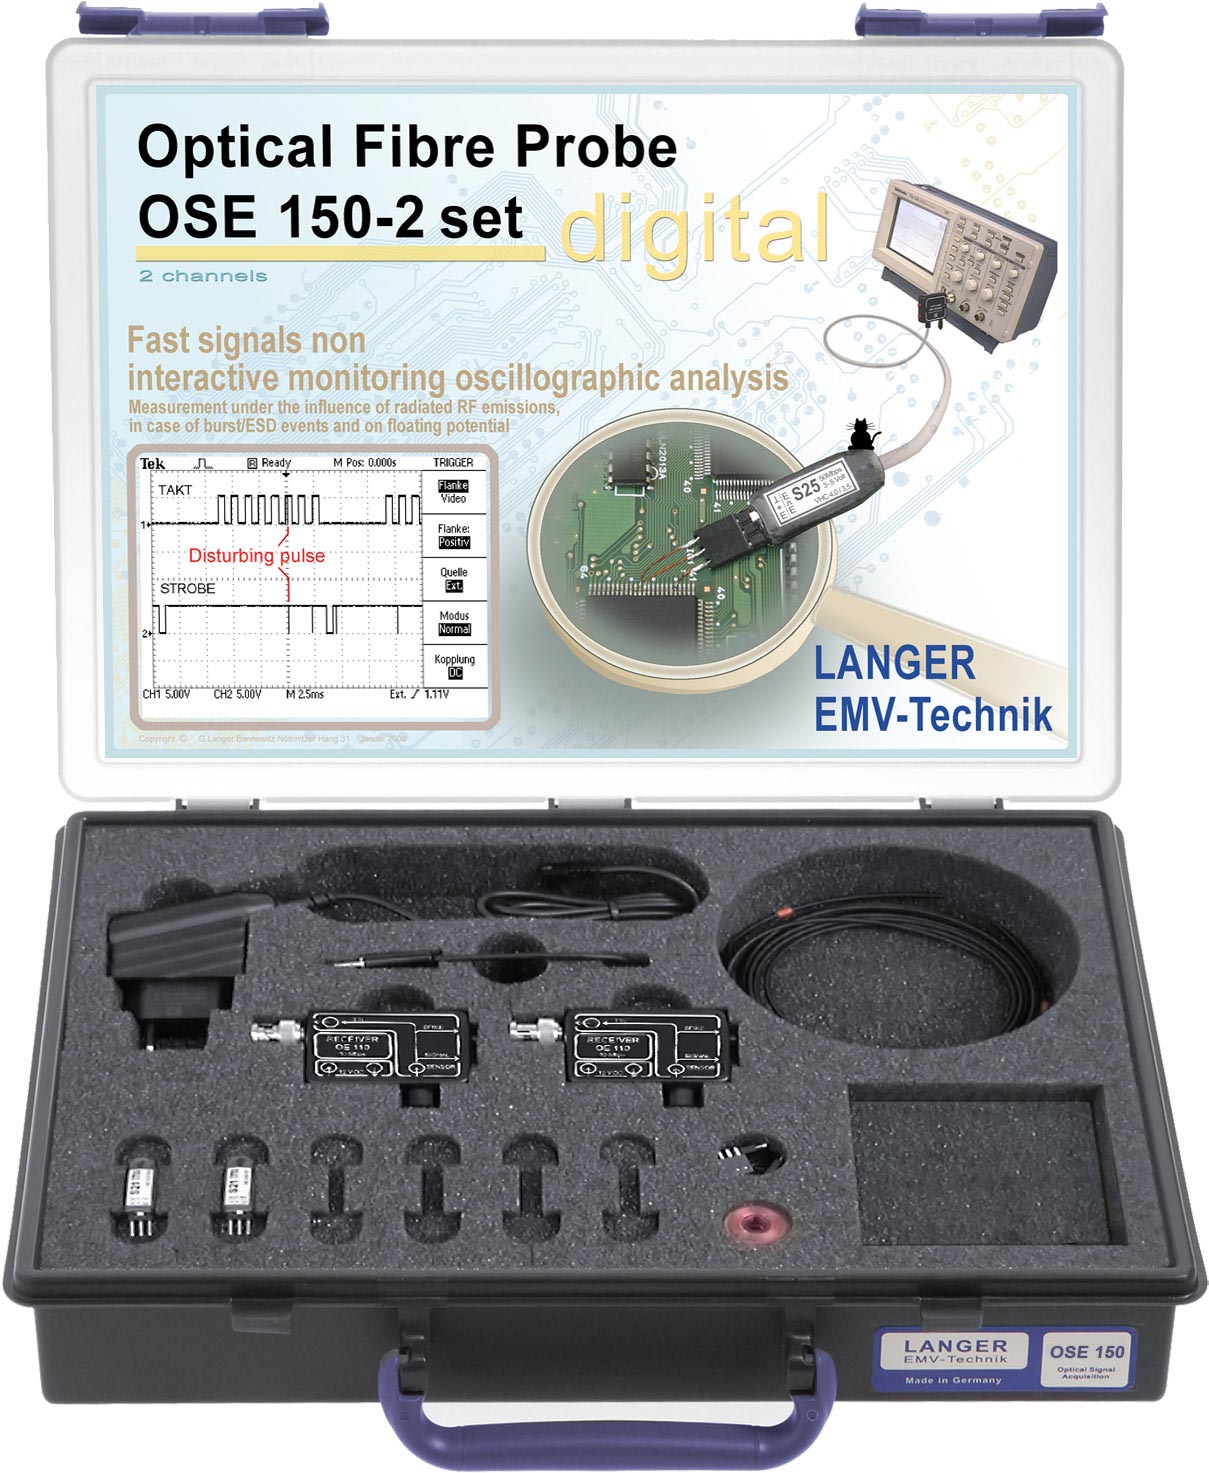 OSE 150-2 set, Optical Fiber Probe 2-Channel, 50 Mbps